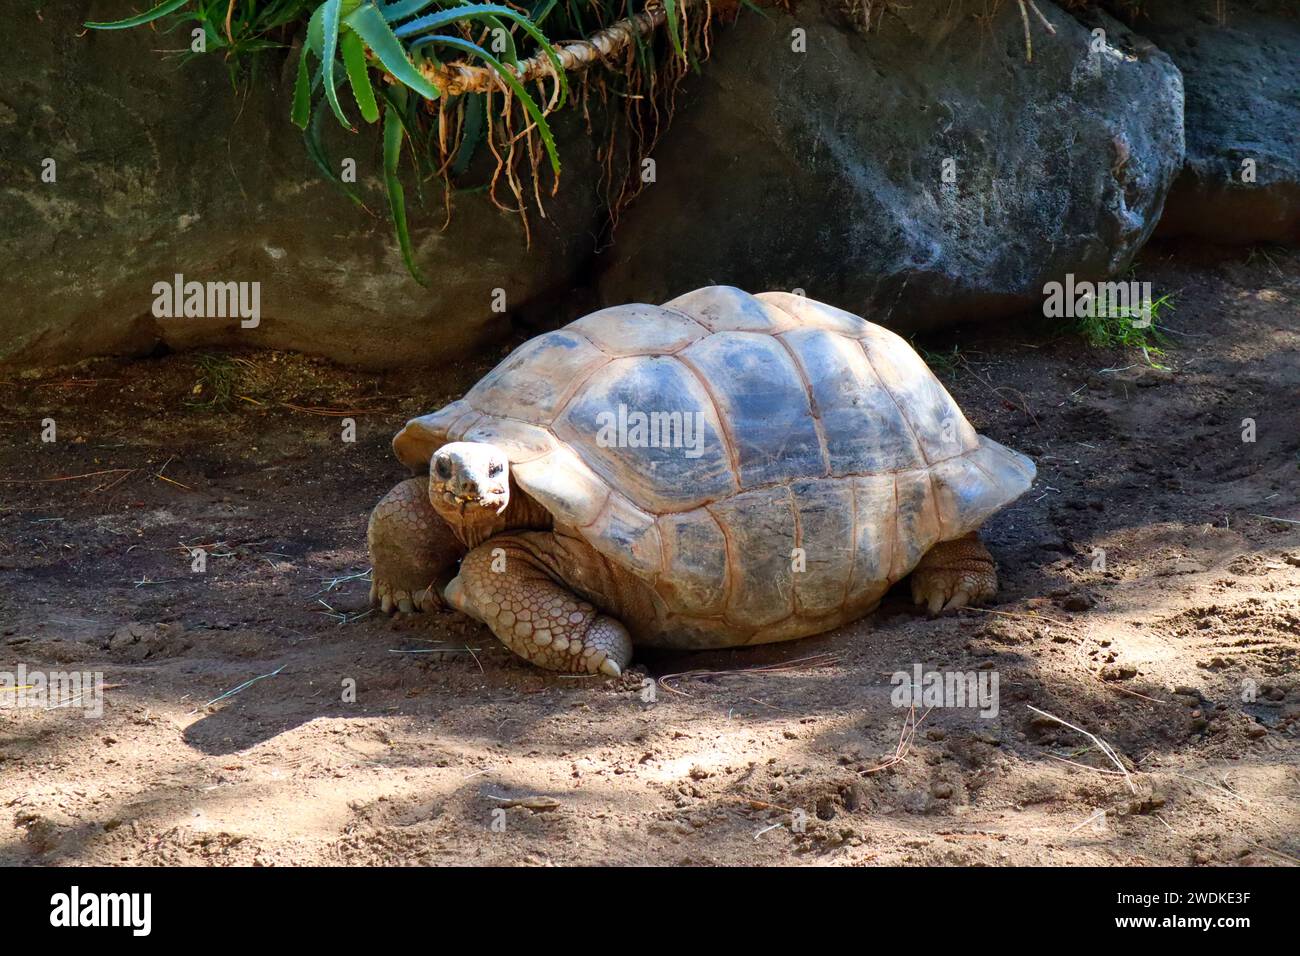 Tortue Aldabra (Geochelone gigantea), est une espèce de tortue de la famille des Testudinidae des îles de l'atoll d'Aldabra aux Seychelles Banque D'Images